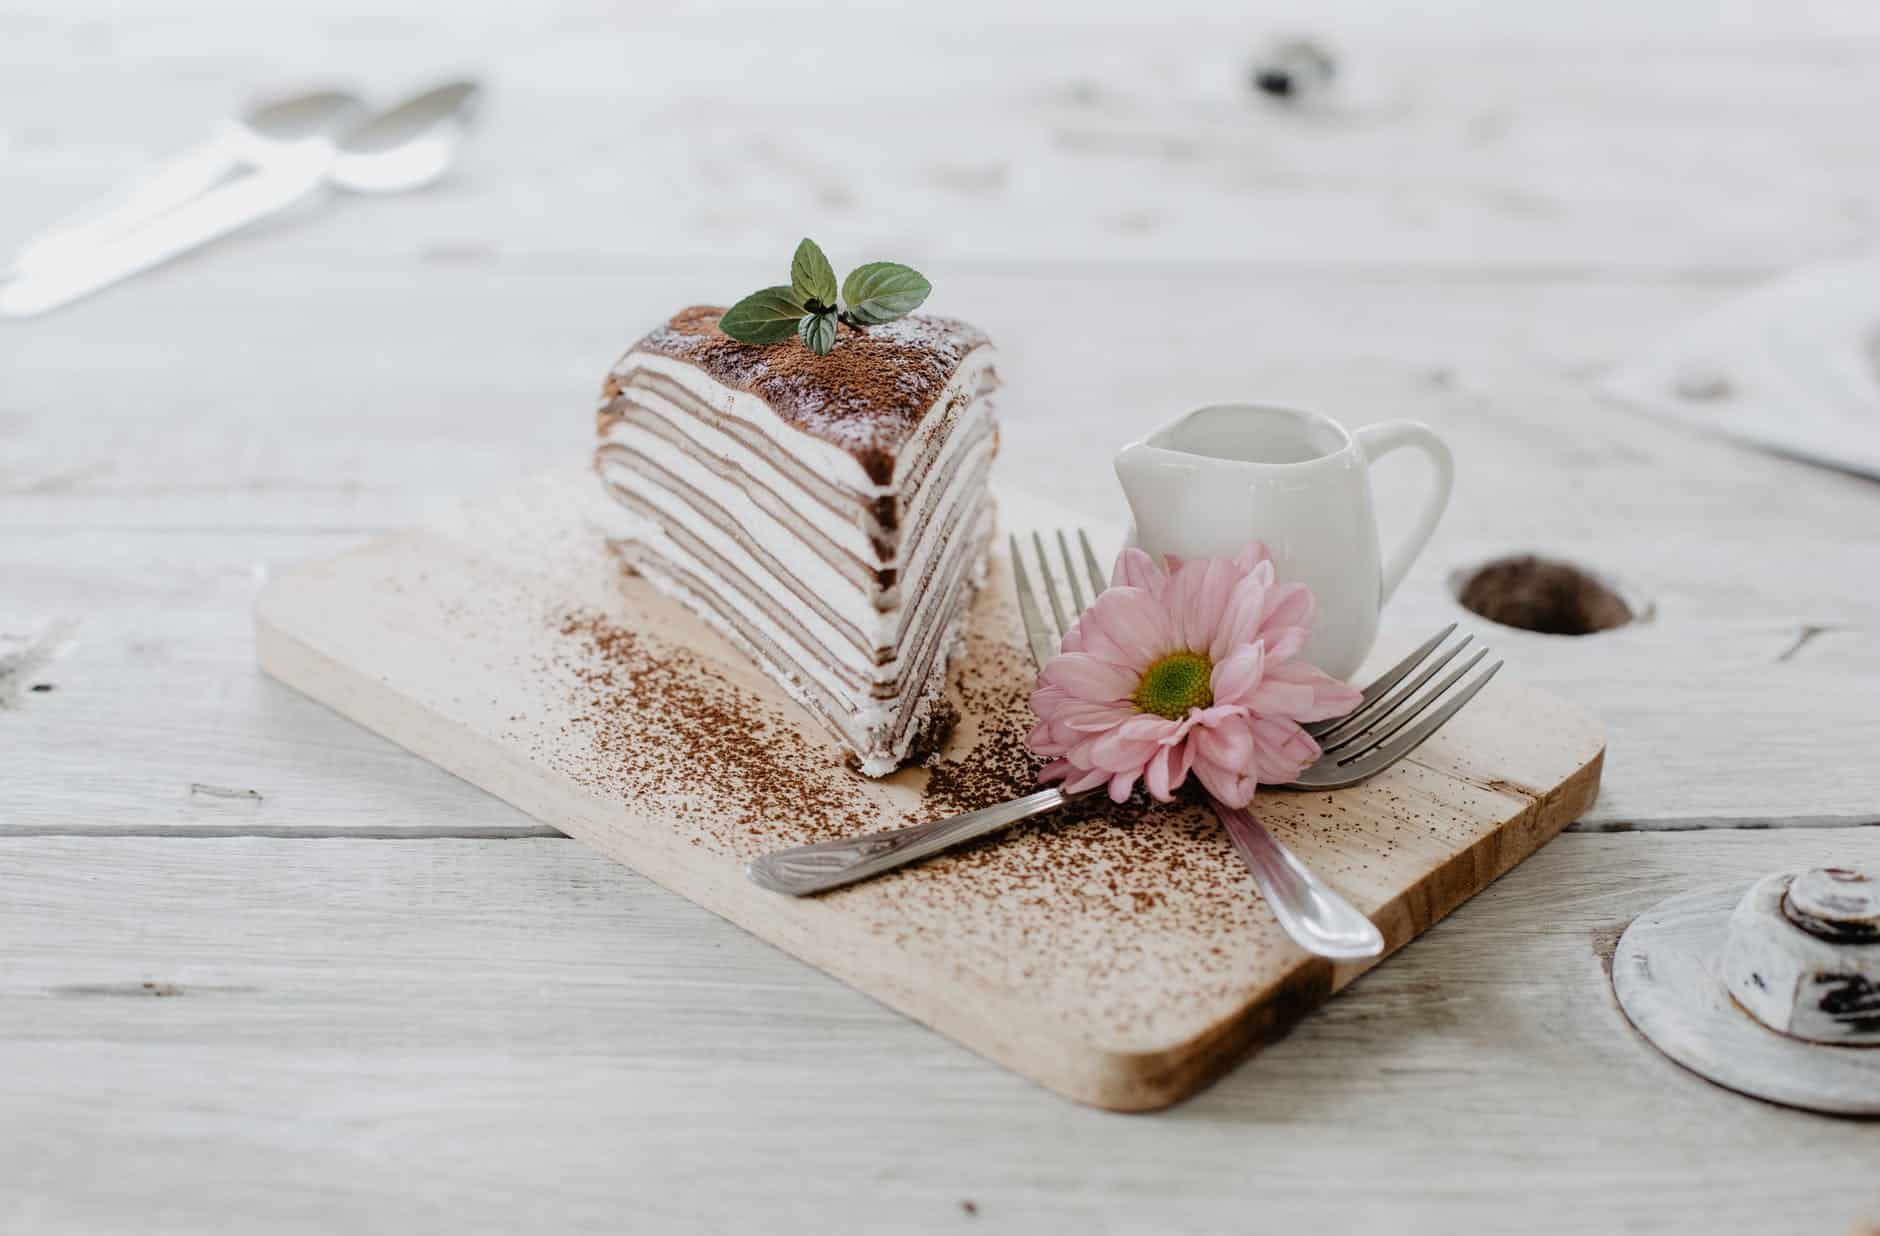 Gâteau de Bonbons Mariage/Anniv. - Les recettes d'Alicia